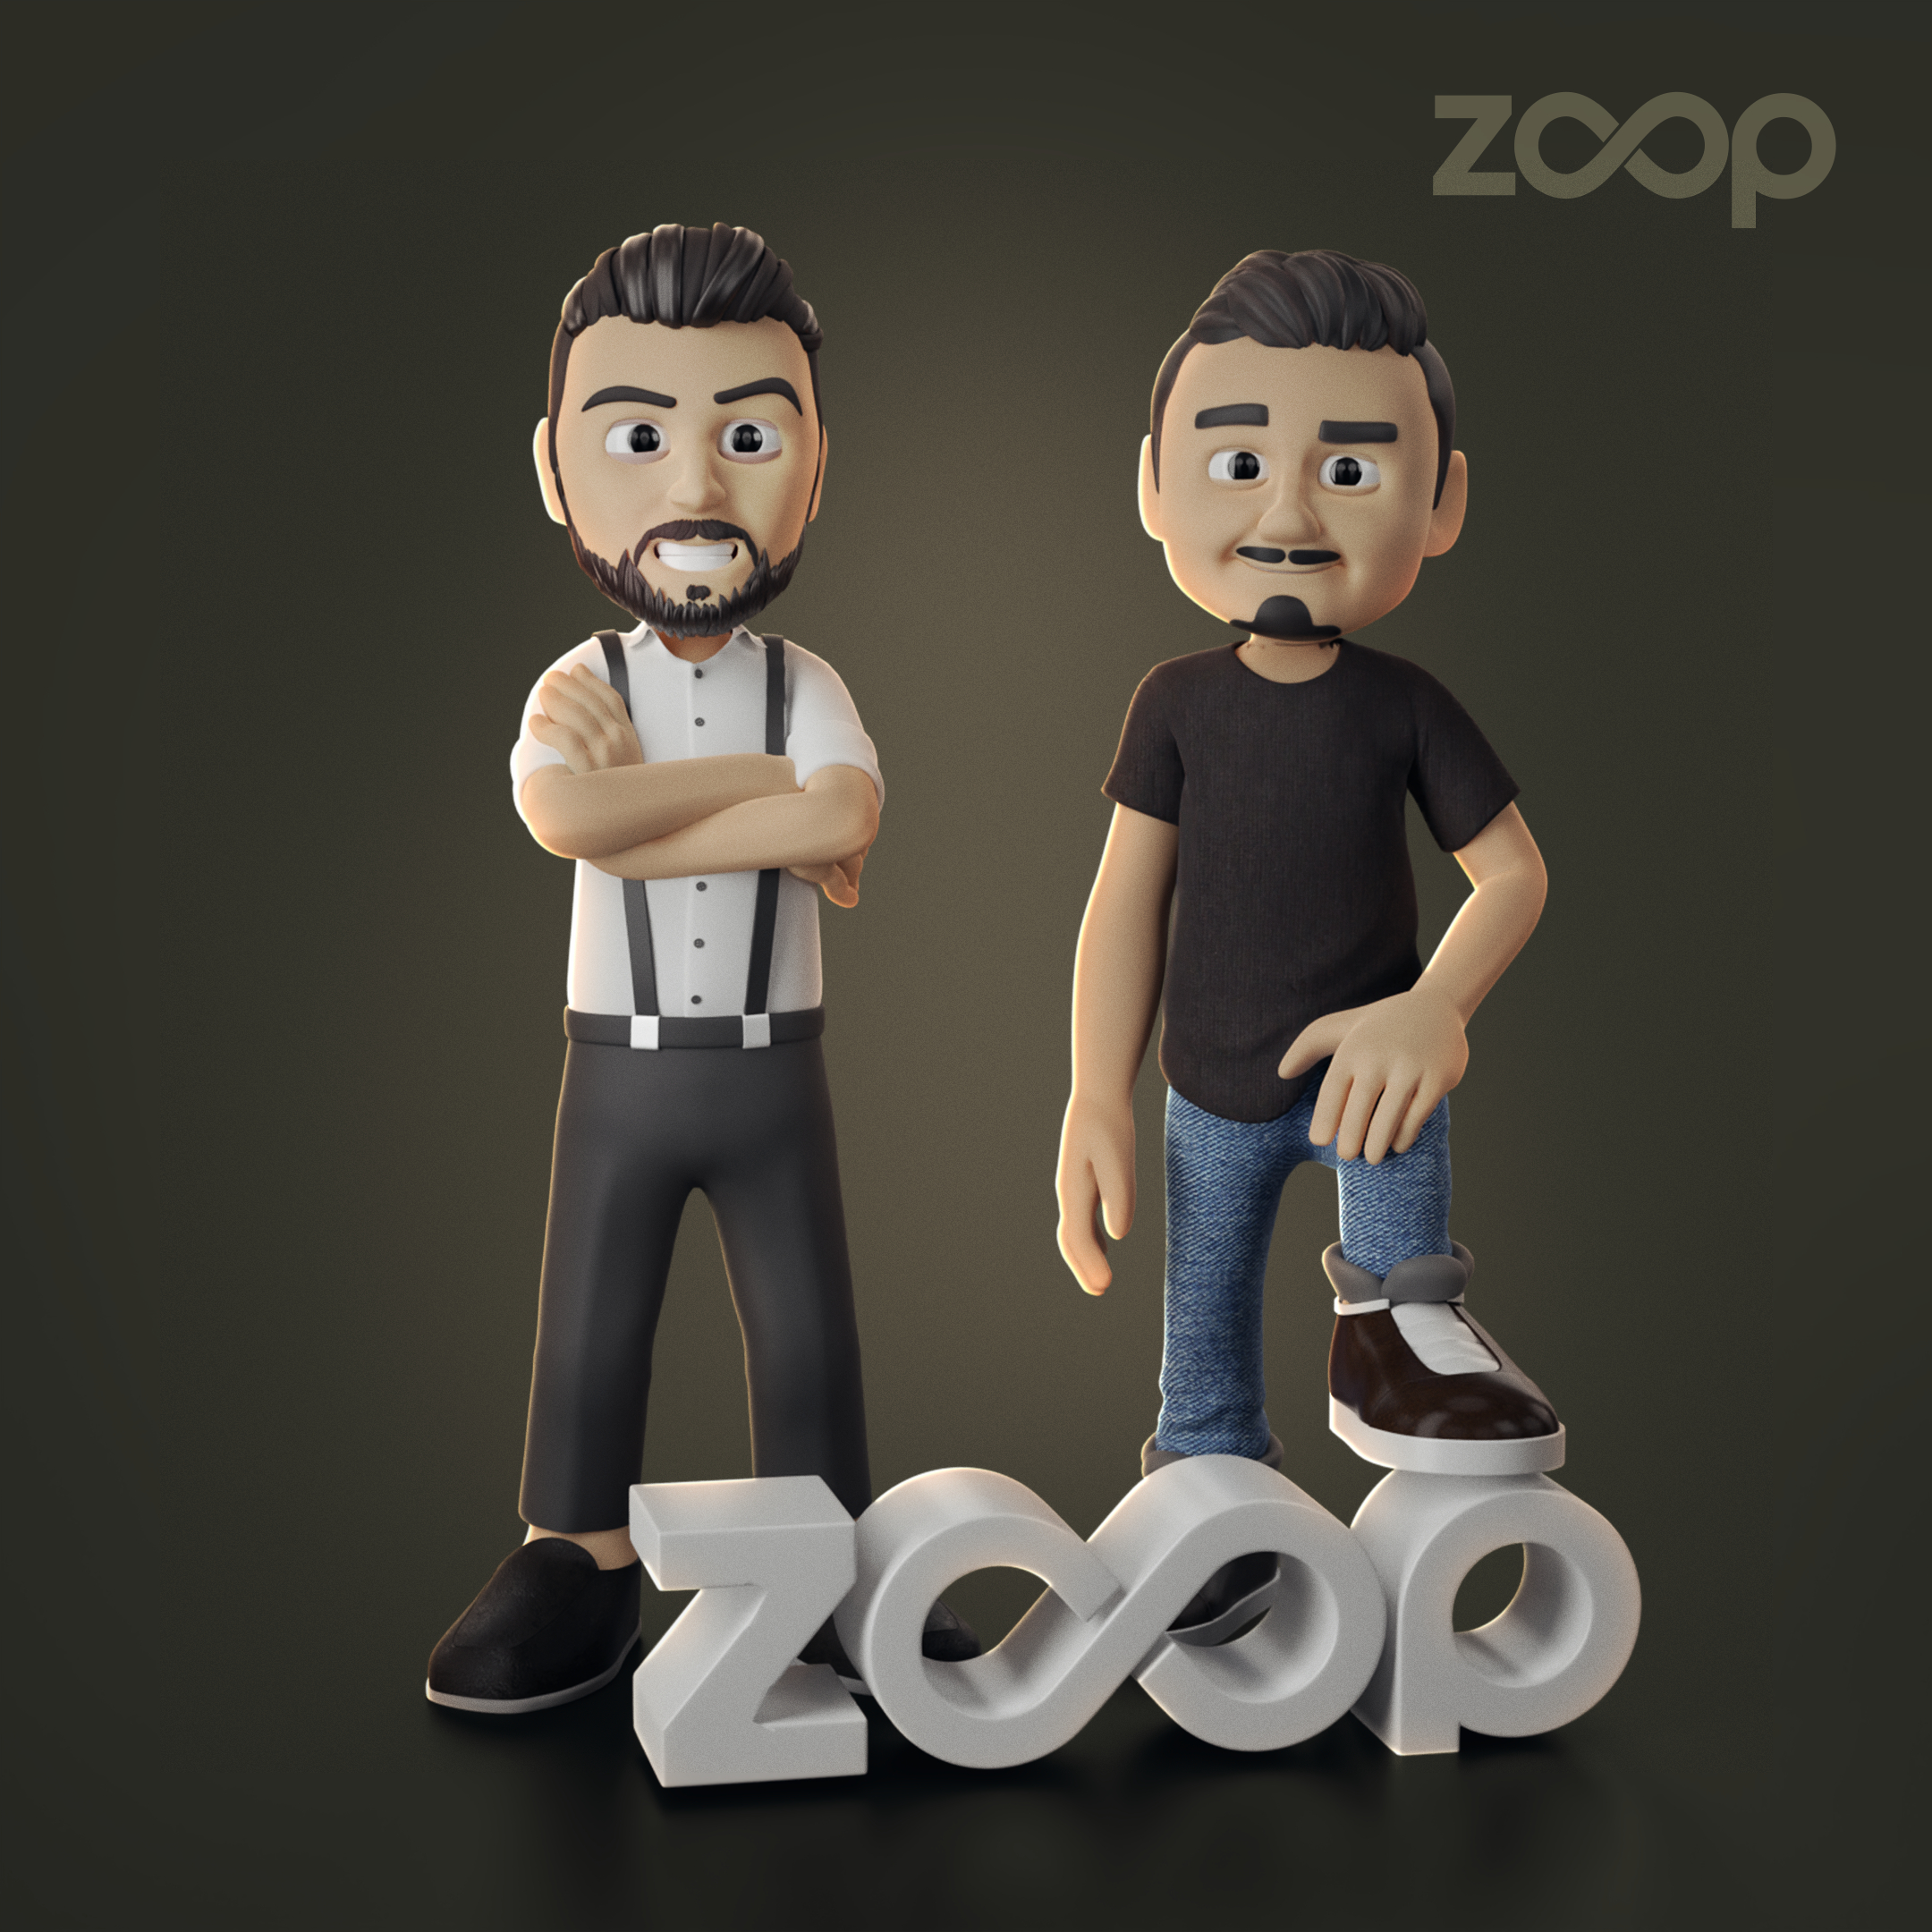 Riassunto: Il fondatore di OnlyFans lancia Zoop, la piattaforma di scambio delle carte da gioco di personaggi famosi, con il supporto di Polygon